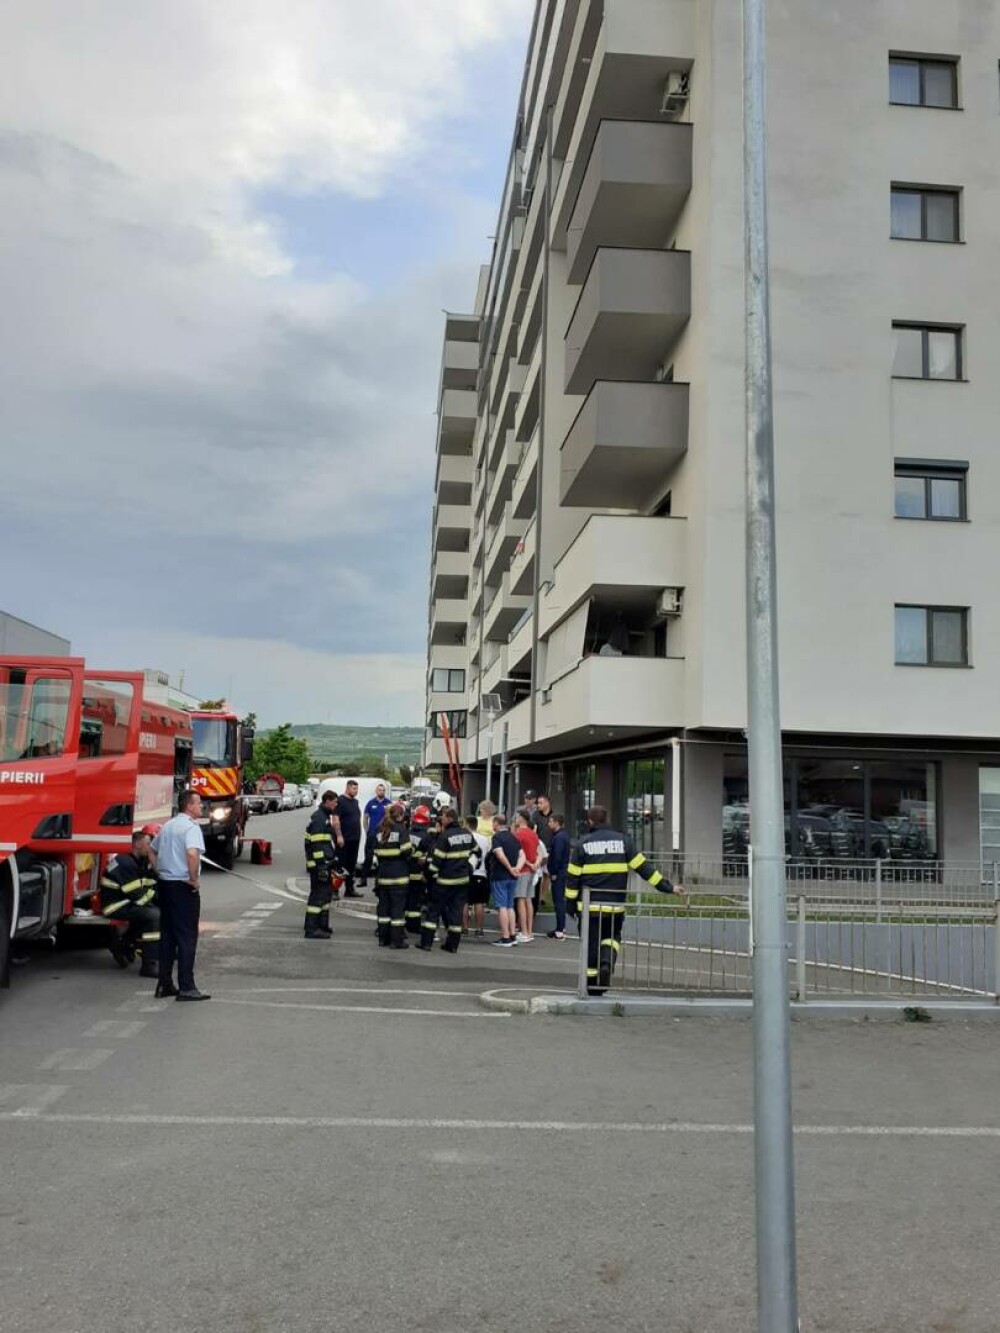 Zeci de locatari evacuați dintr-un bloc din Cluj din cauza unui incendiu produs la subsol. O mașină a luat foc | FOTO - Imaginea 4